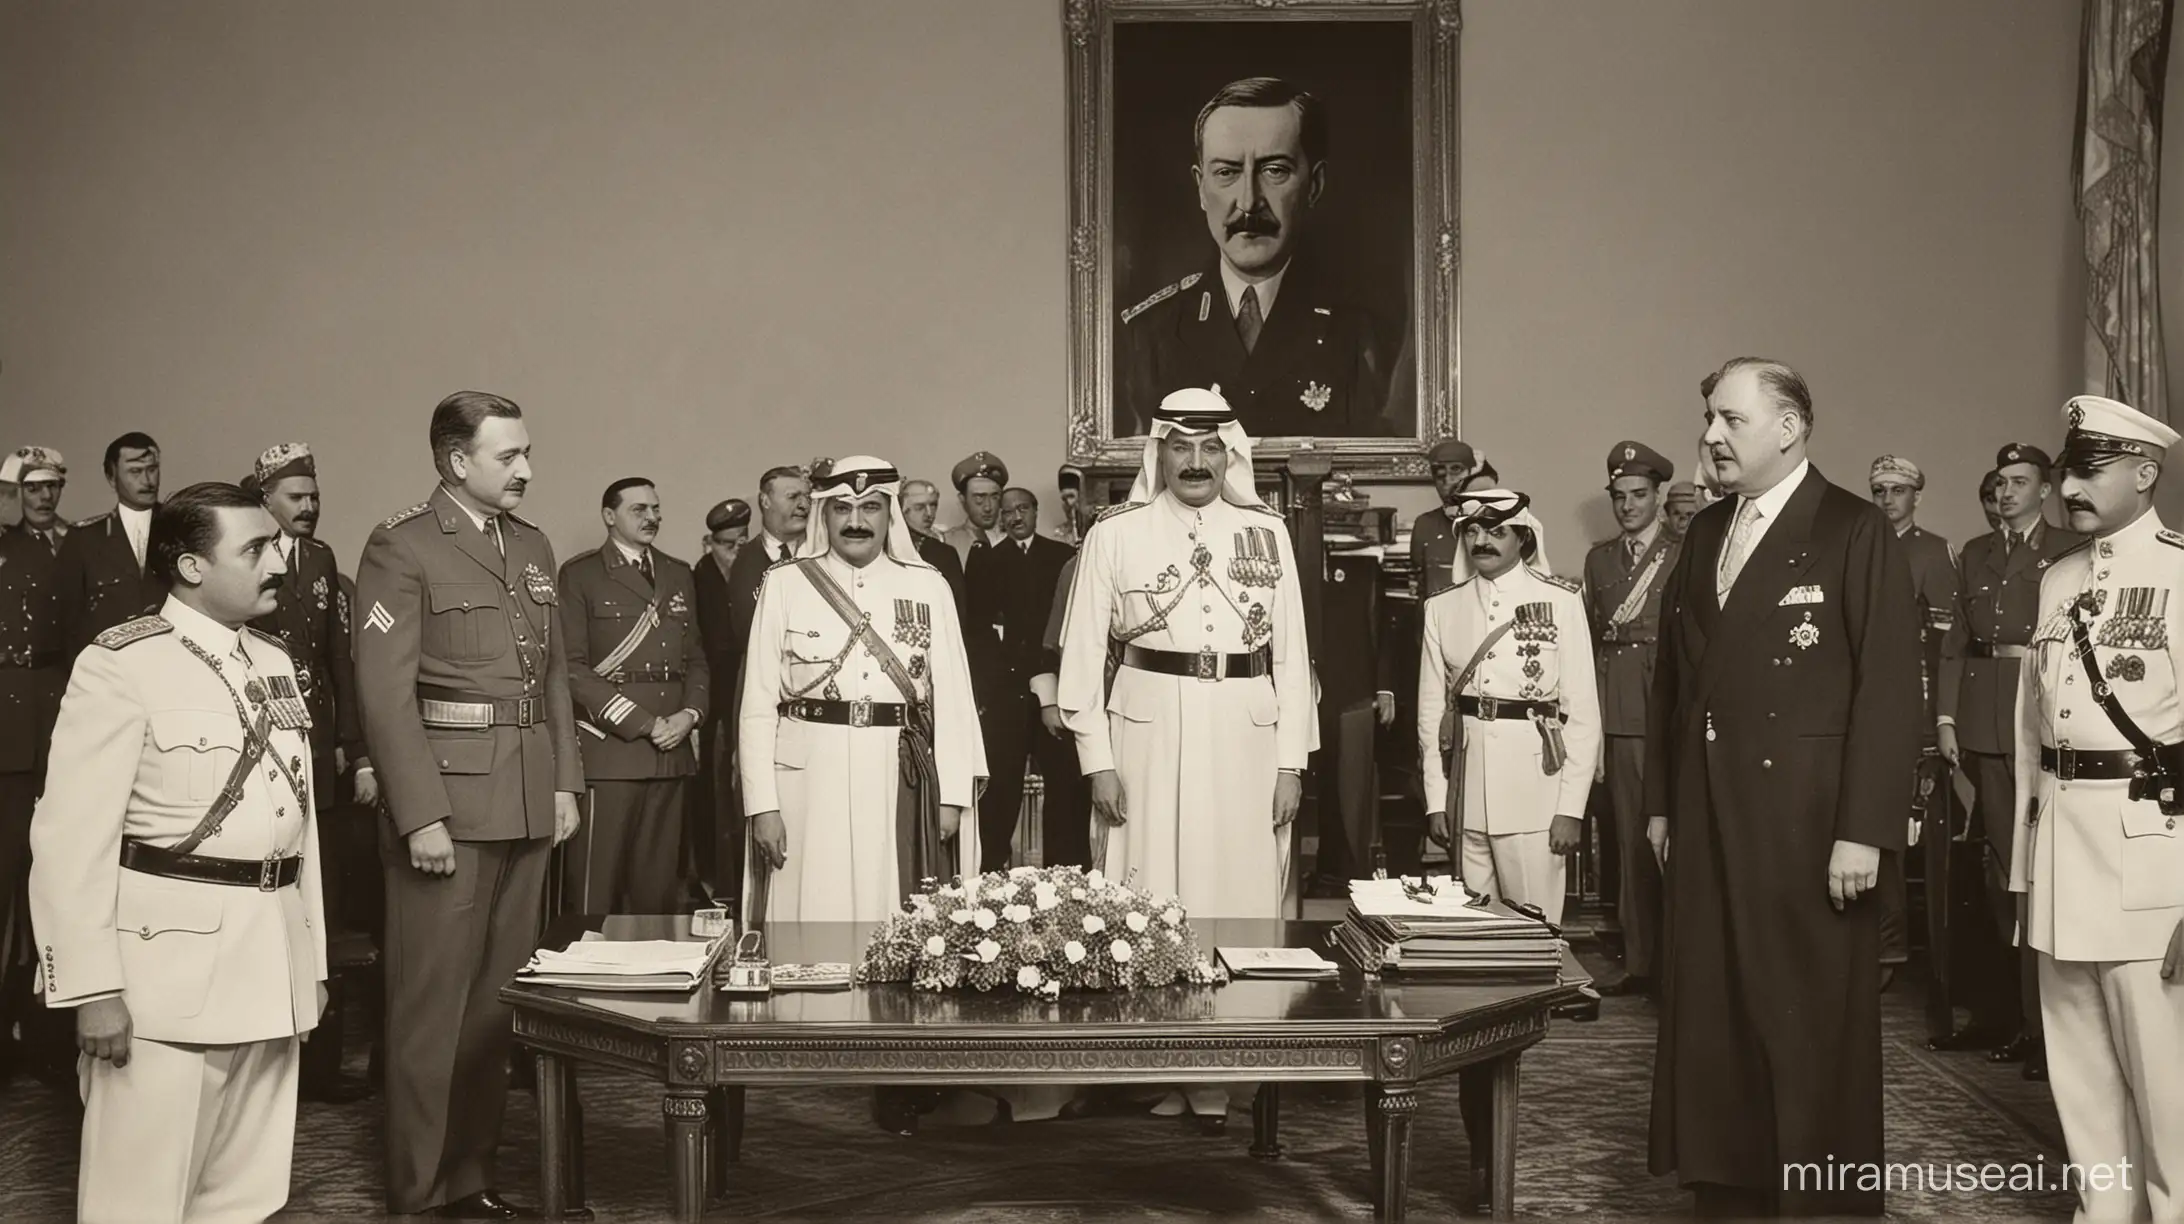 Rei romeno apertando mão do príncipe árabe saudita. Atrás militares de alta patentes sentado em uma mesa cem um salão luxuoso com quadro do Hitler. Fotografia de 1913